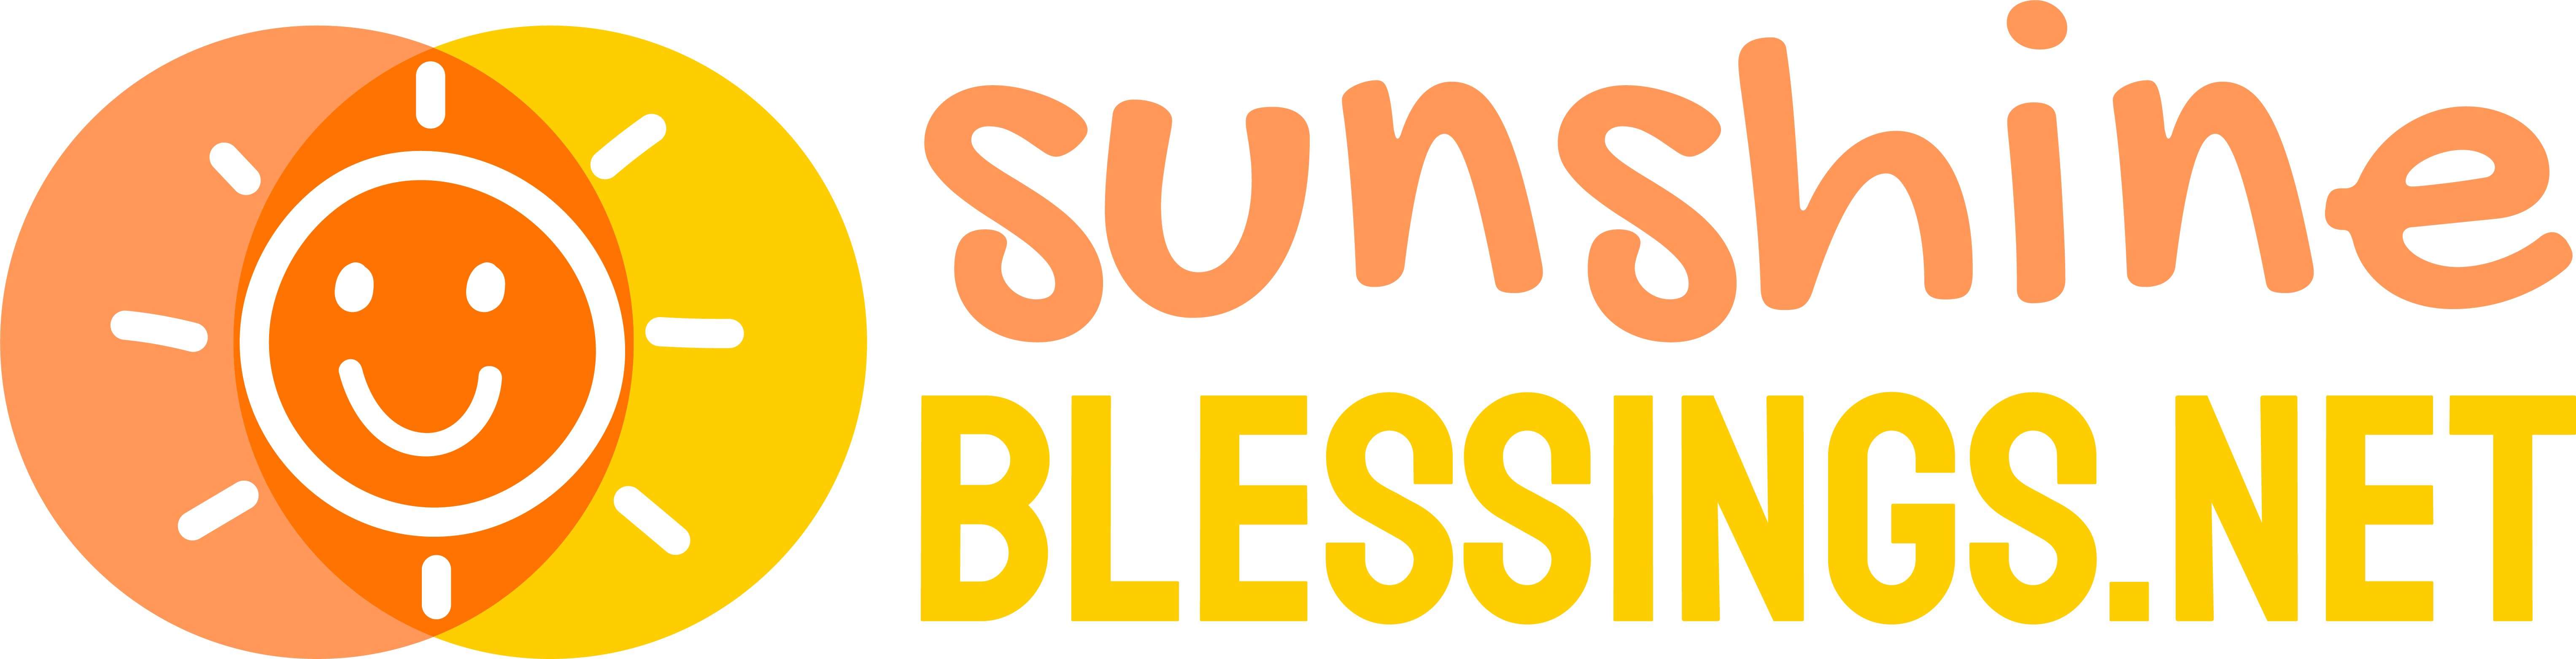 Sunshine Blessings